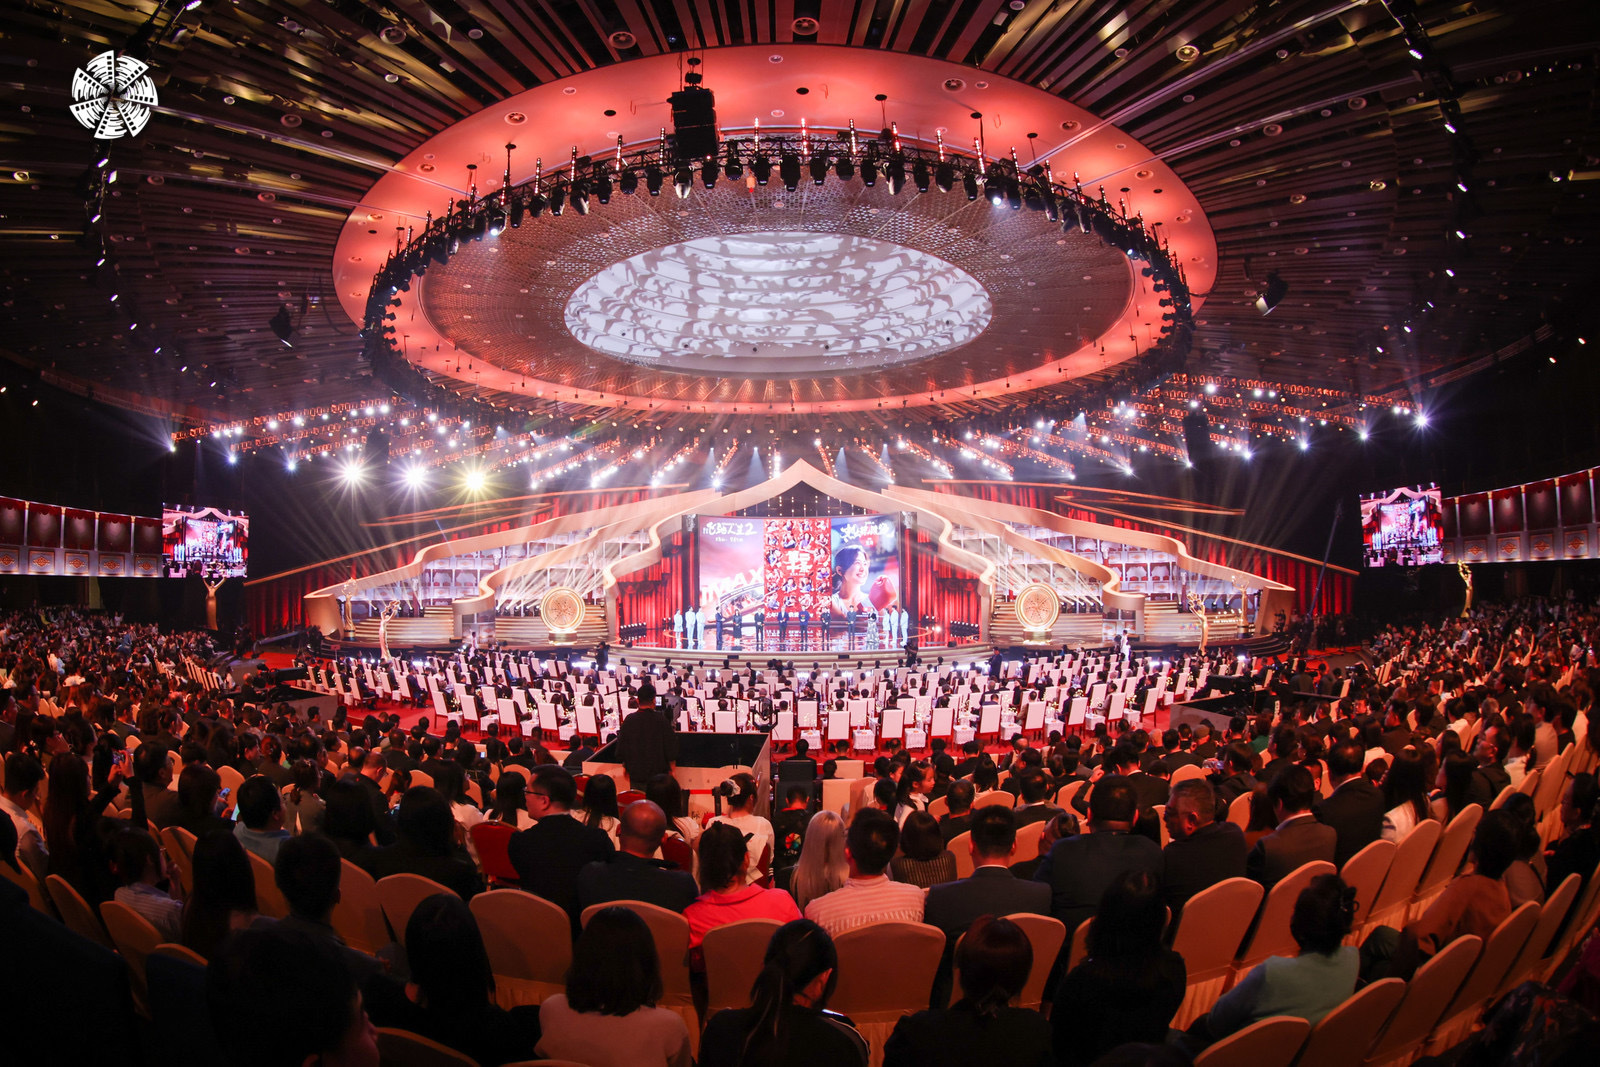 第十四届北京国际电影节拉开帷幕！观时代影像，听世界声音